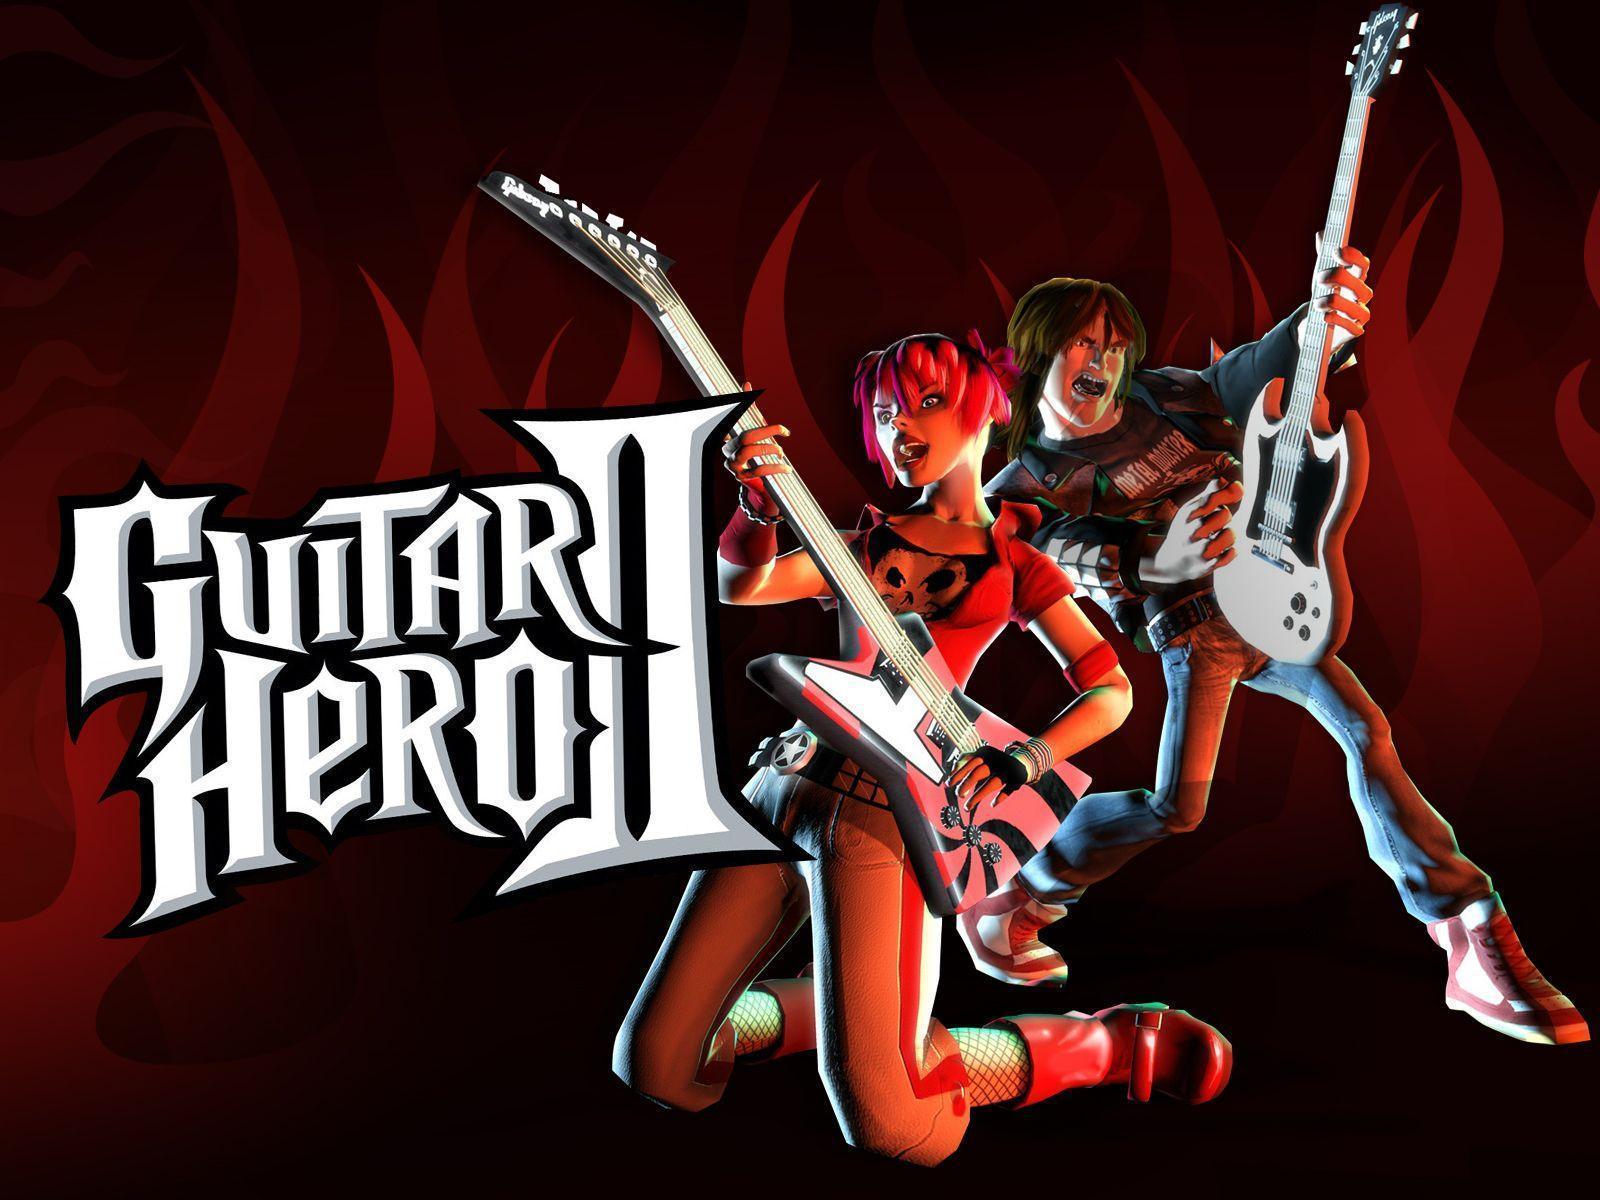 1280x720px Guitar Hero (473.55 KB).06.2015